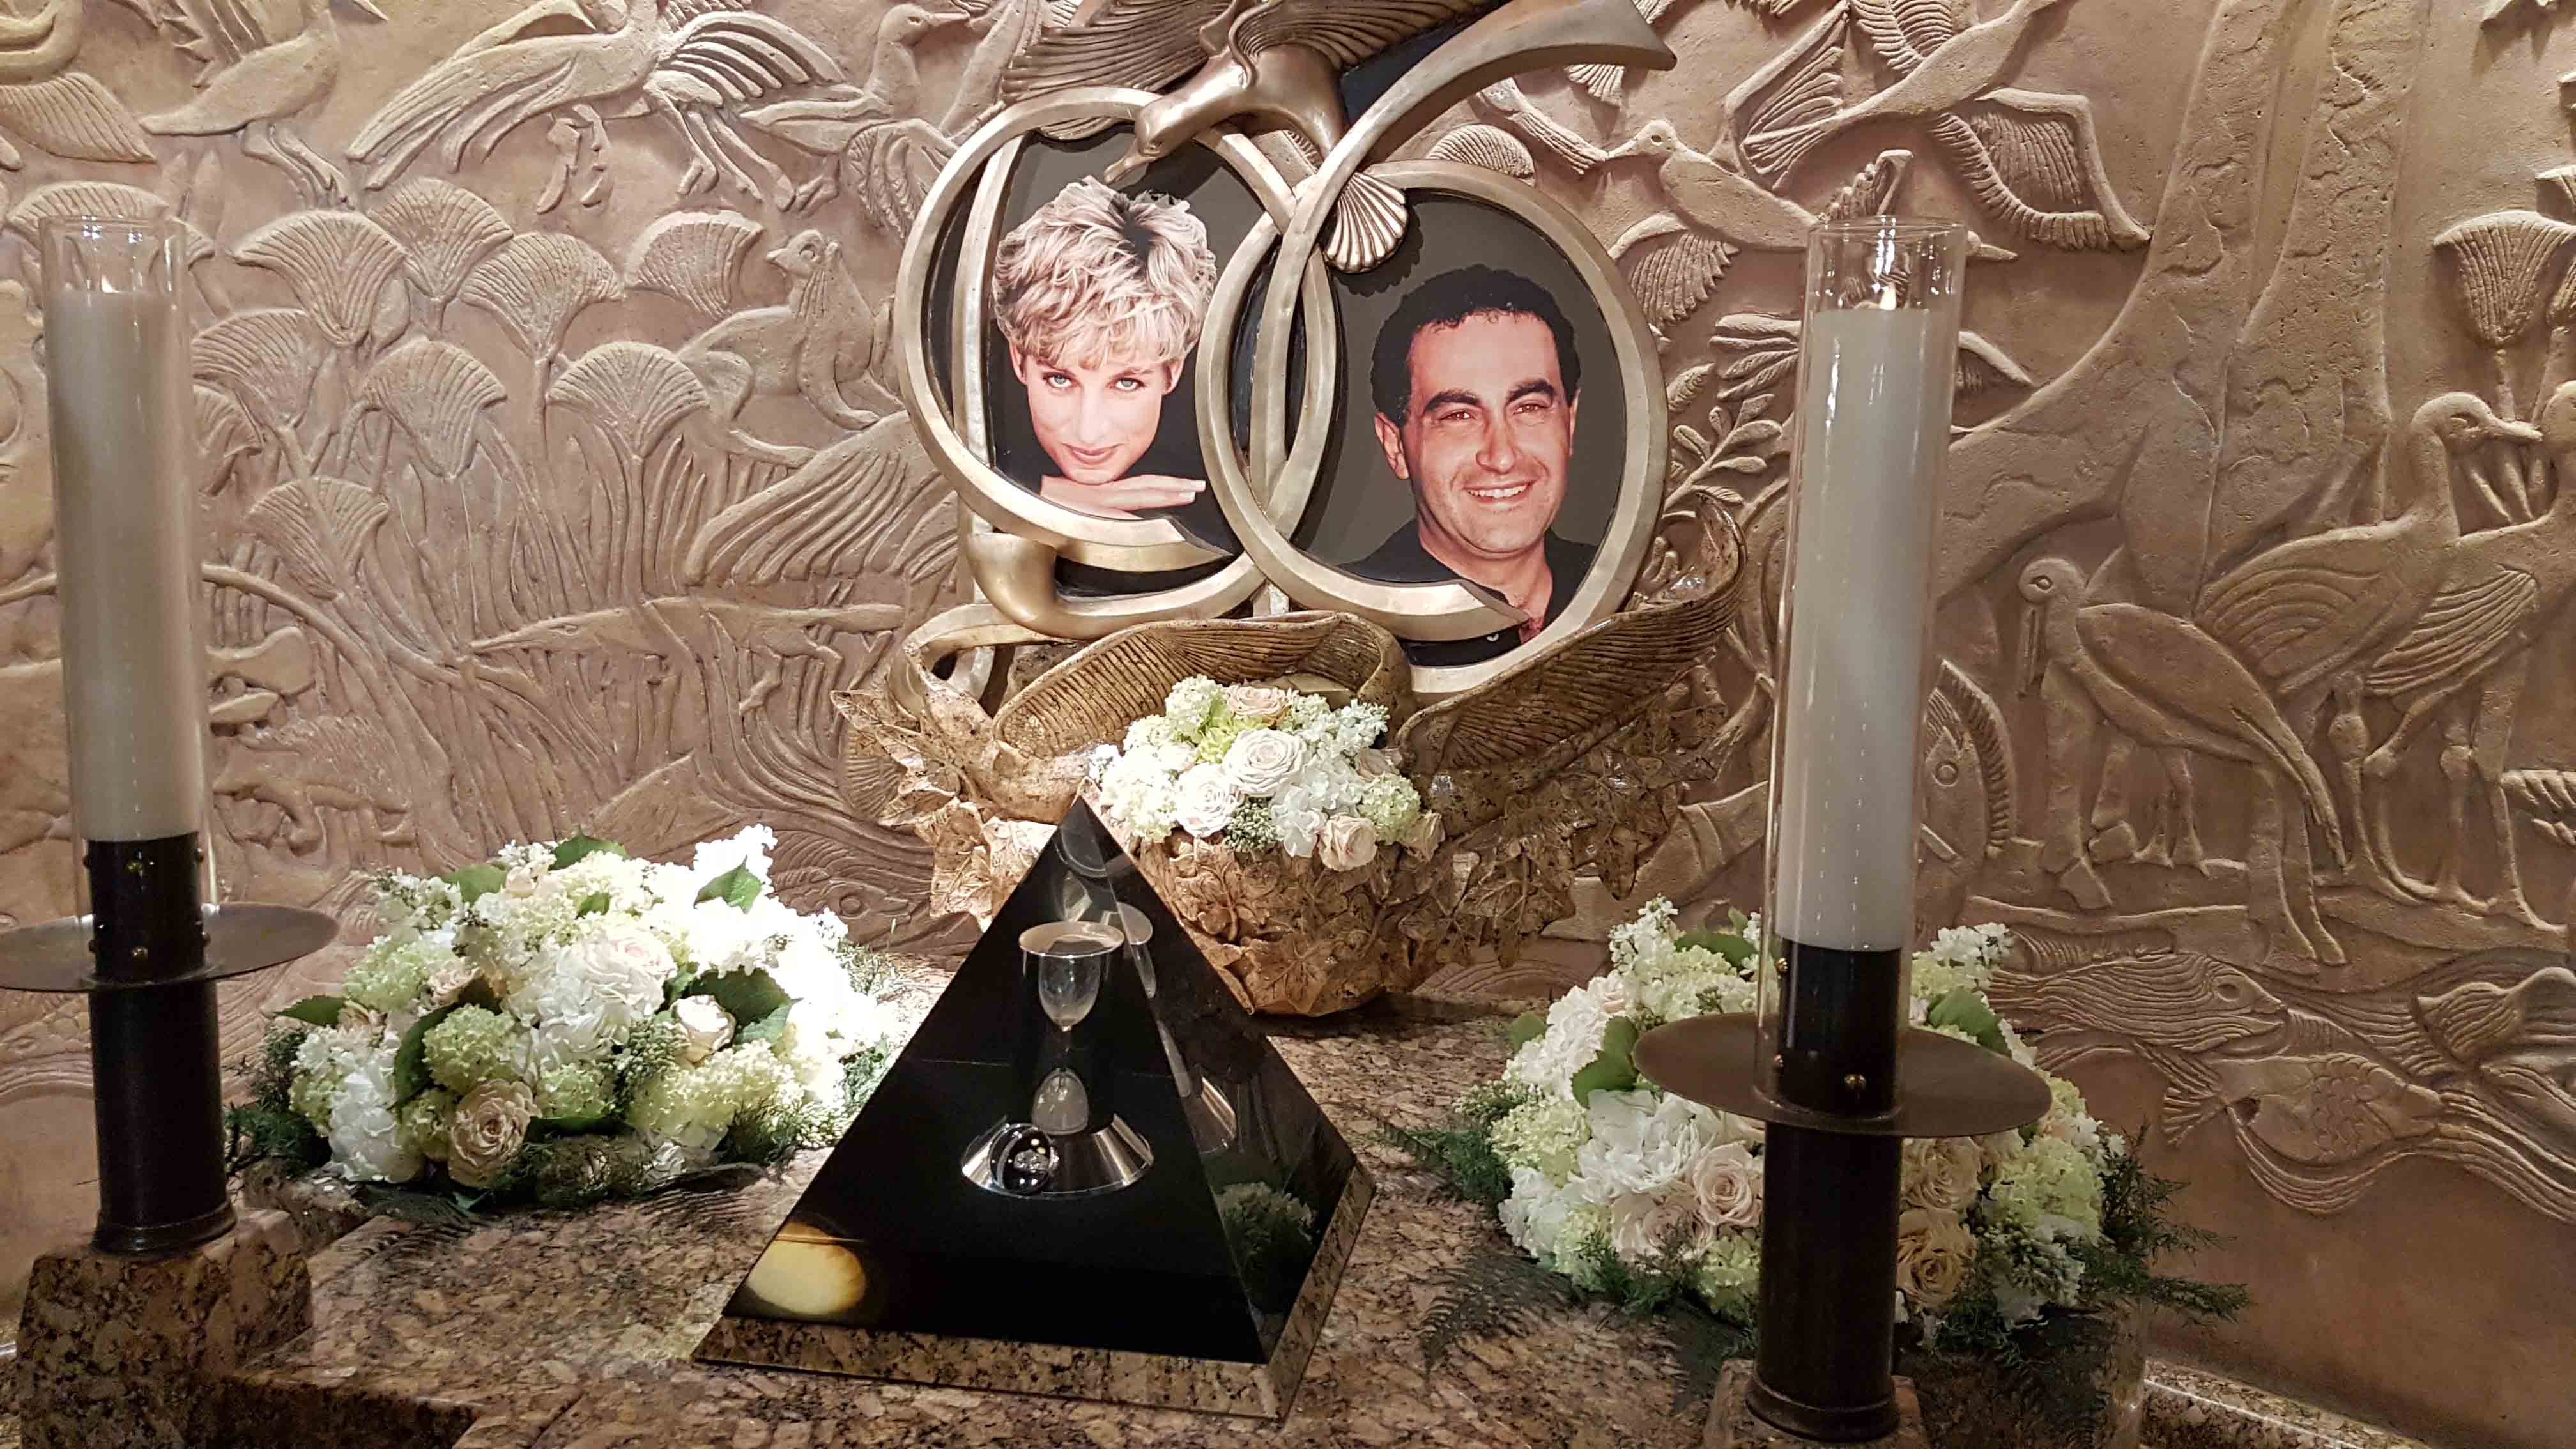 Bizarrices da Harrods - memorial da Princesa Daiana e Doddi Fayed